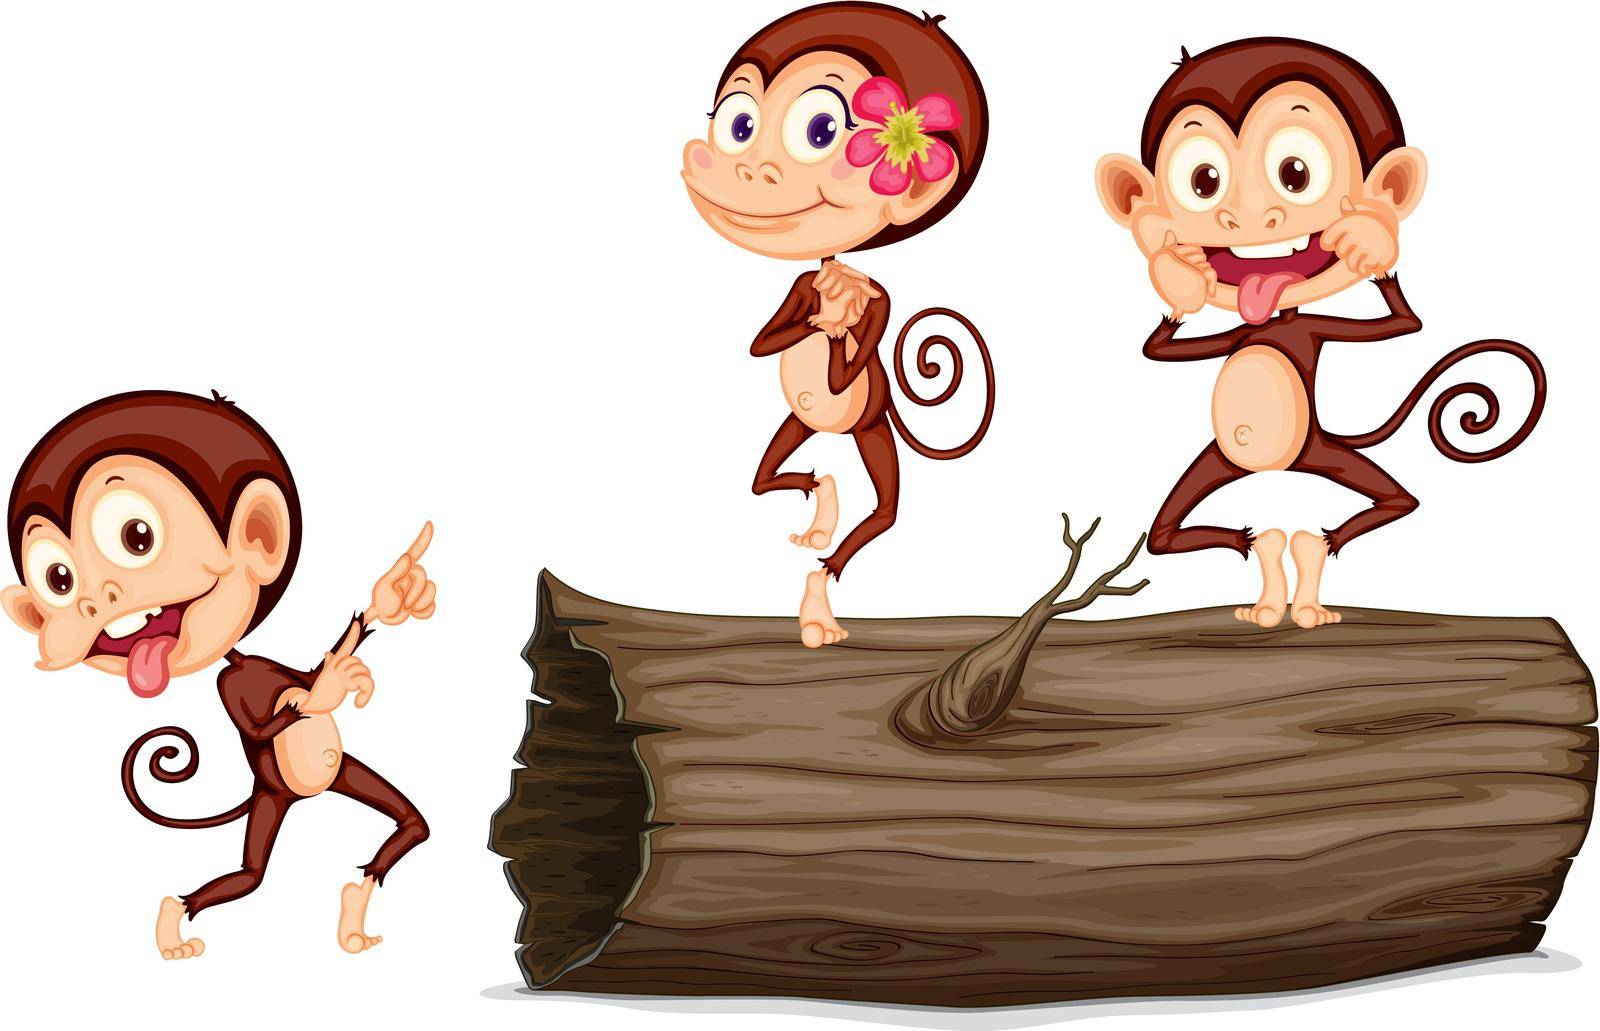 cartoon monkey by iimages